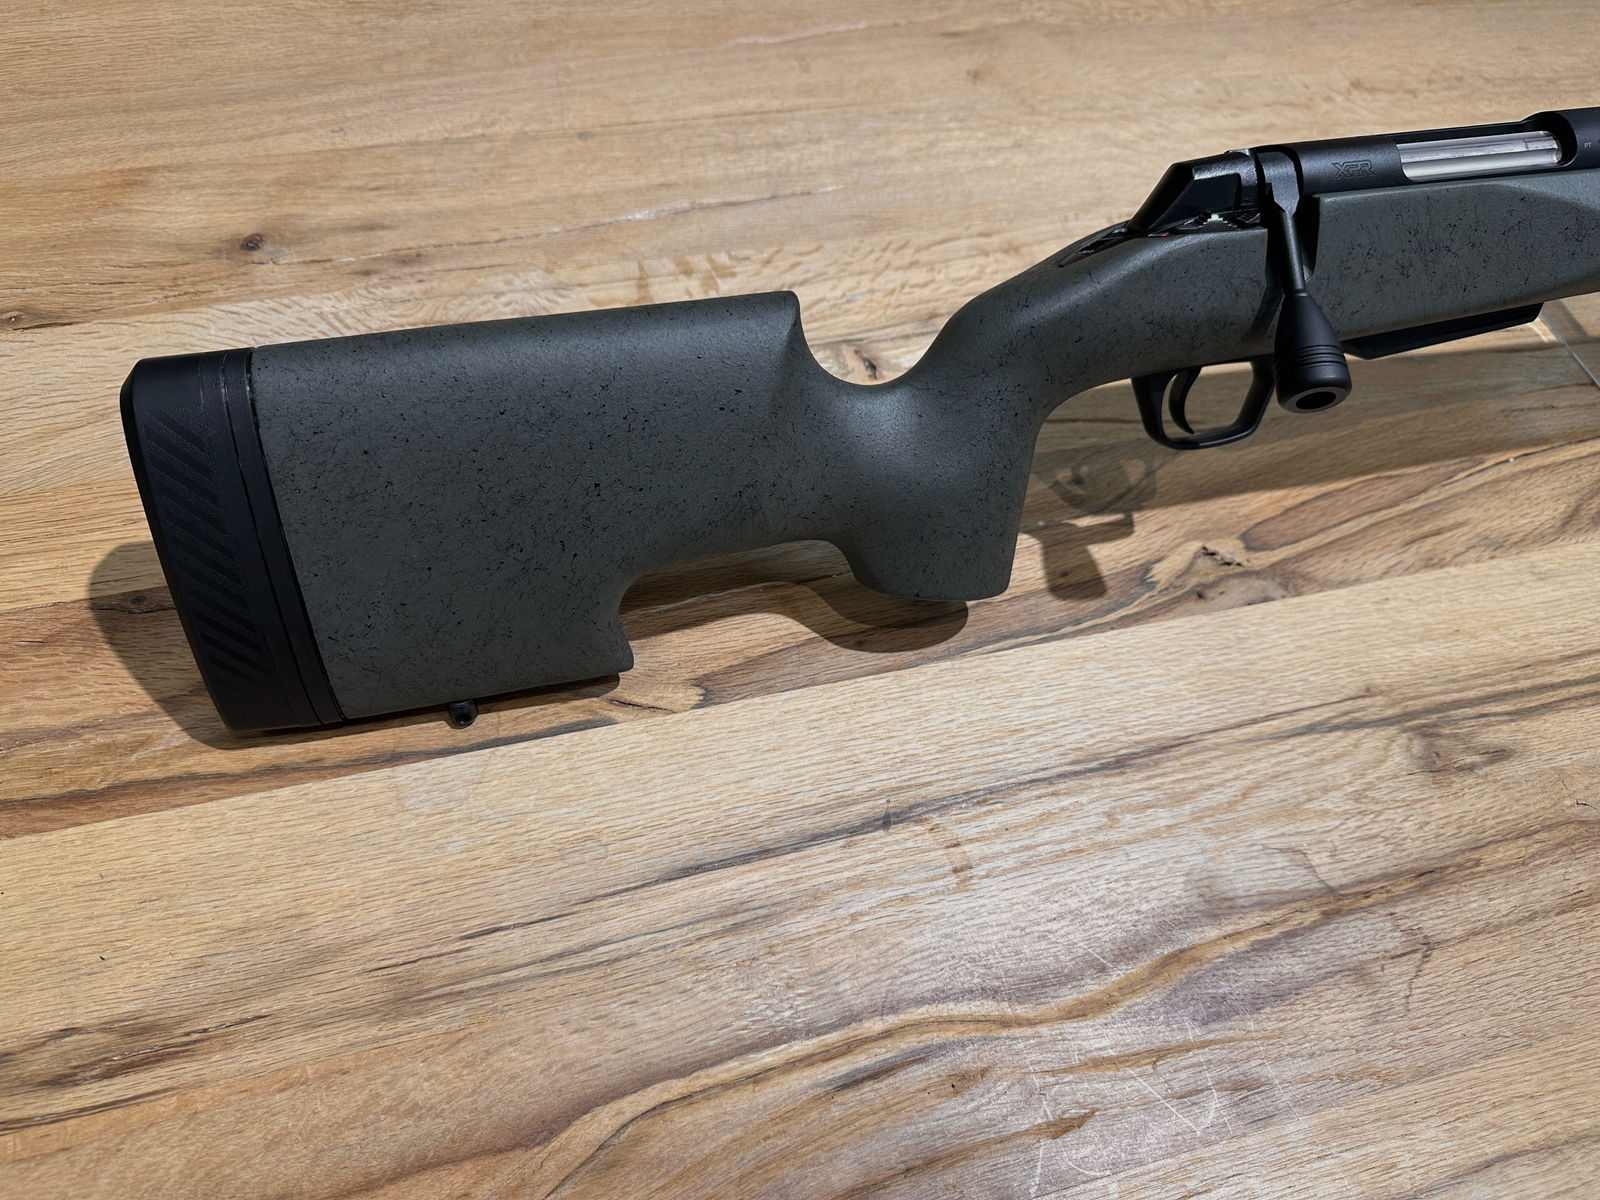 Repetierbüchse Winchester Mod. XPR Long Range Kal. 6,5mm Creedmoor